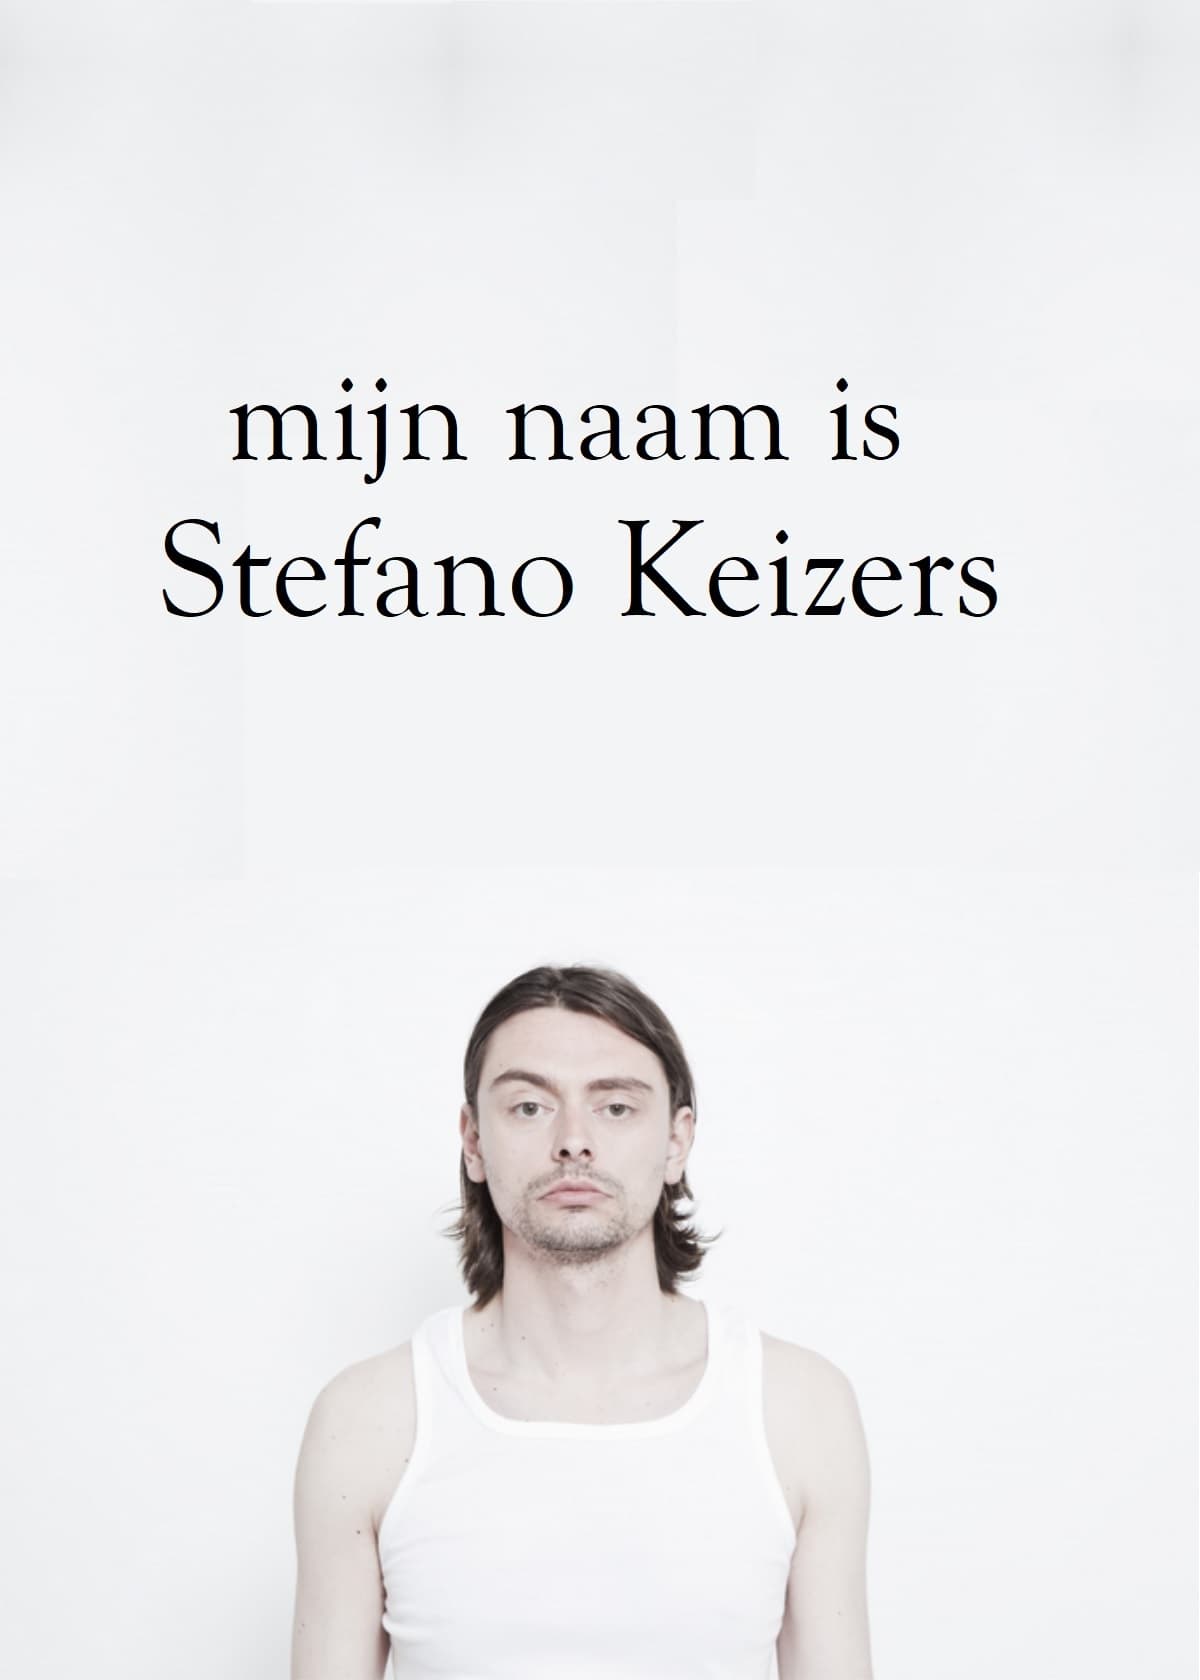 Mijn naam is Stefano Keizers